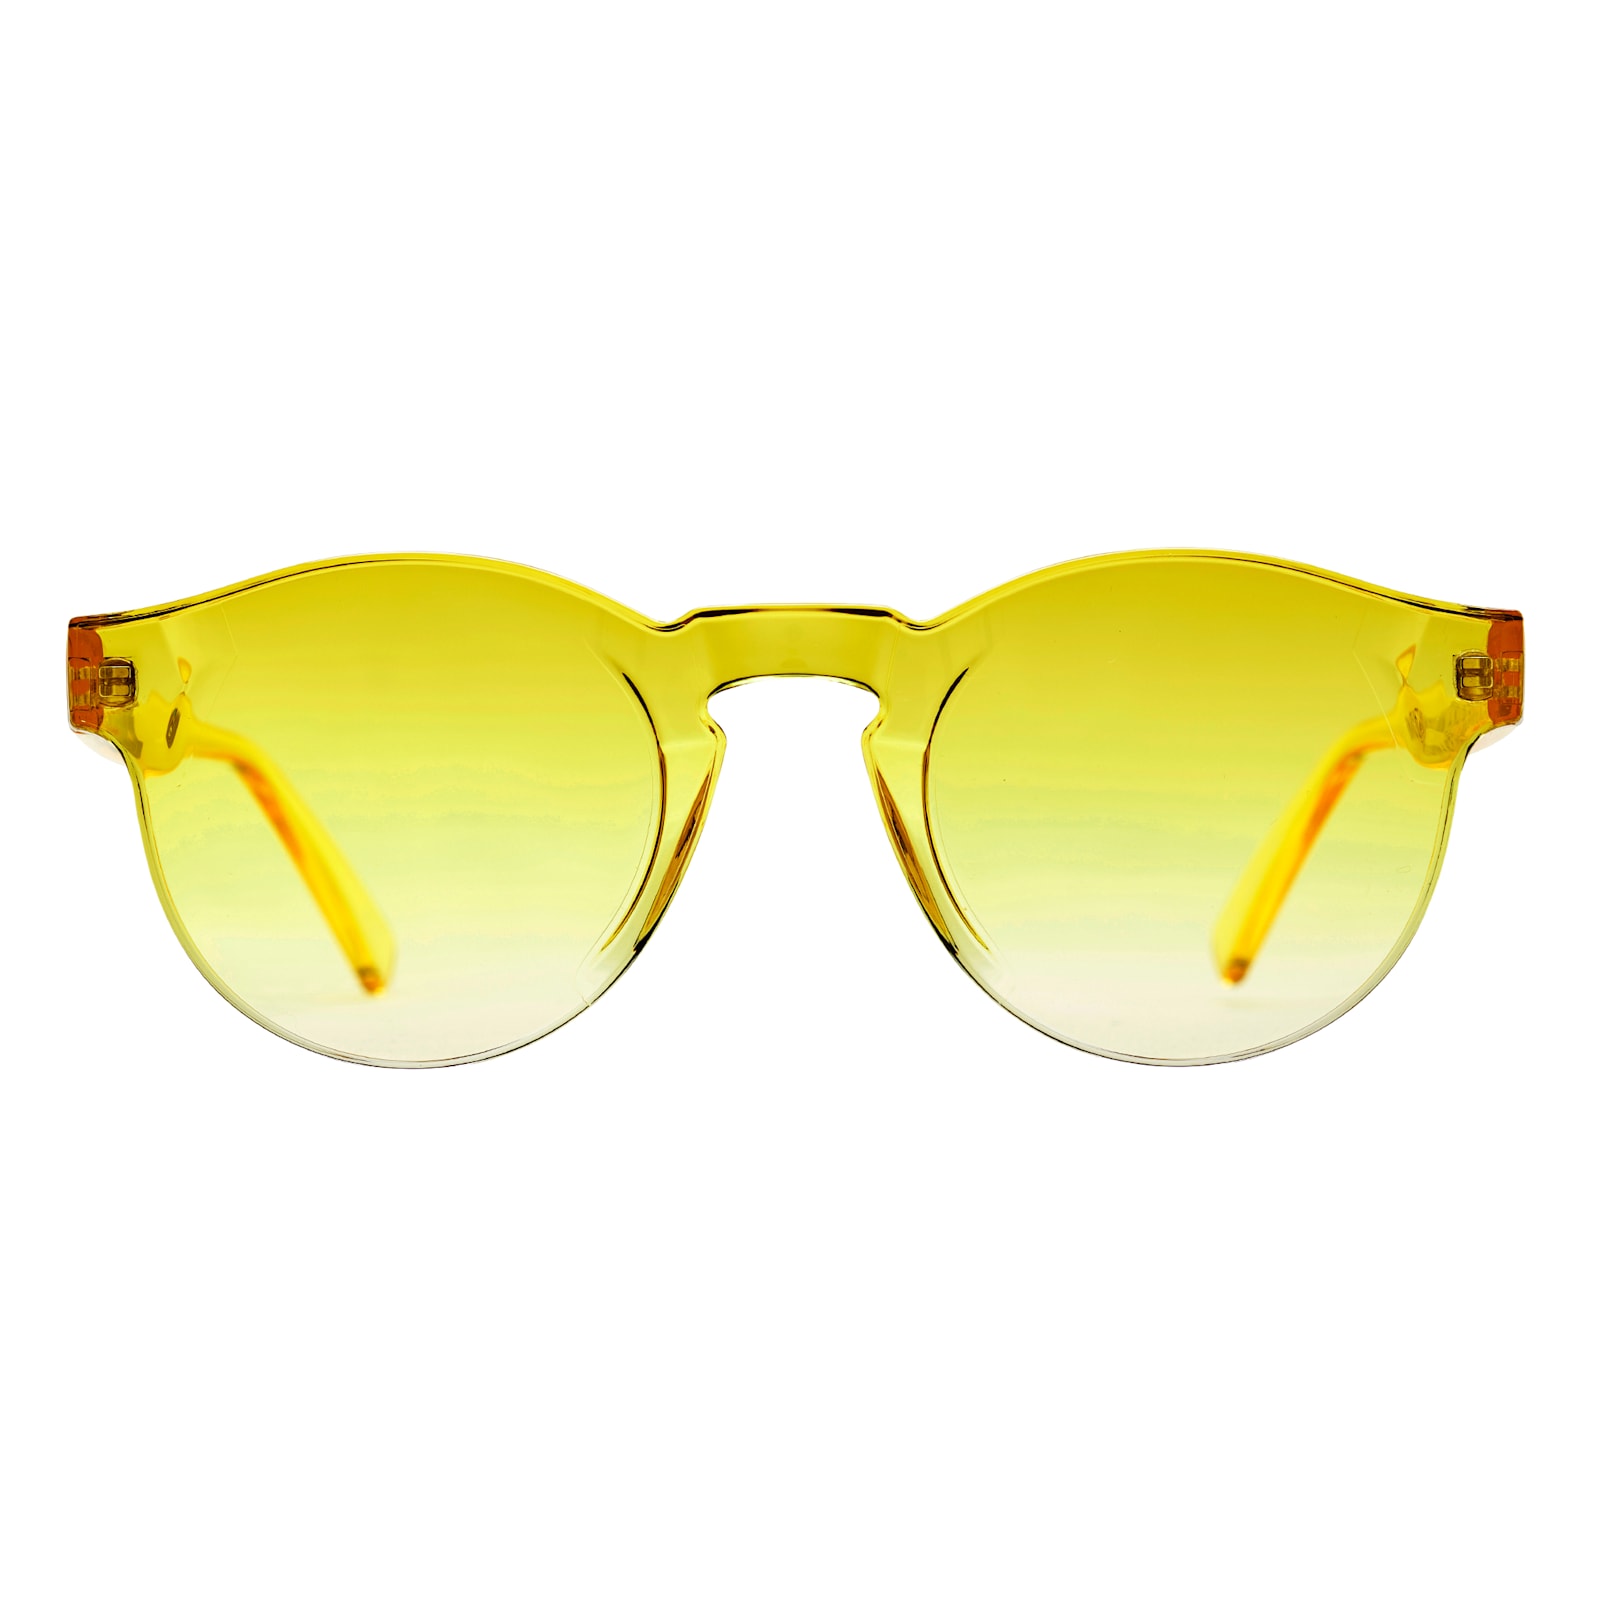 Buy FUNK sunglasses for men & women Black pack of 1 Online at Best